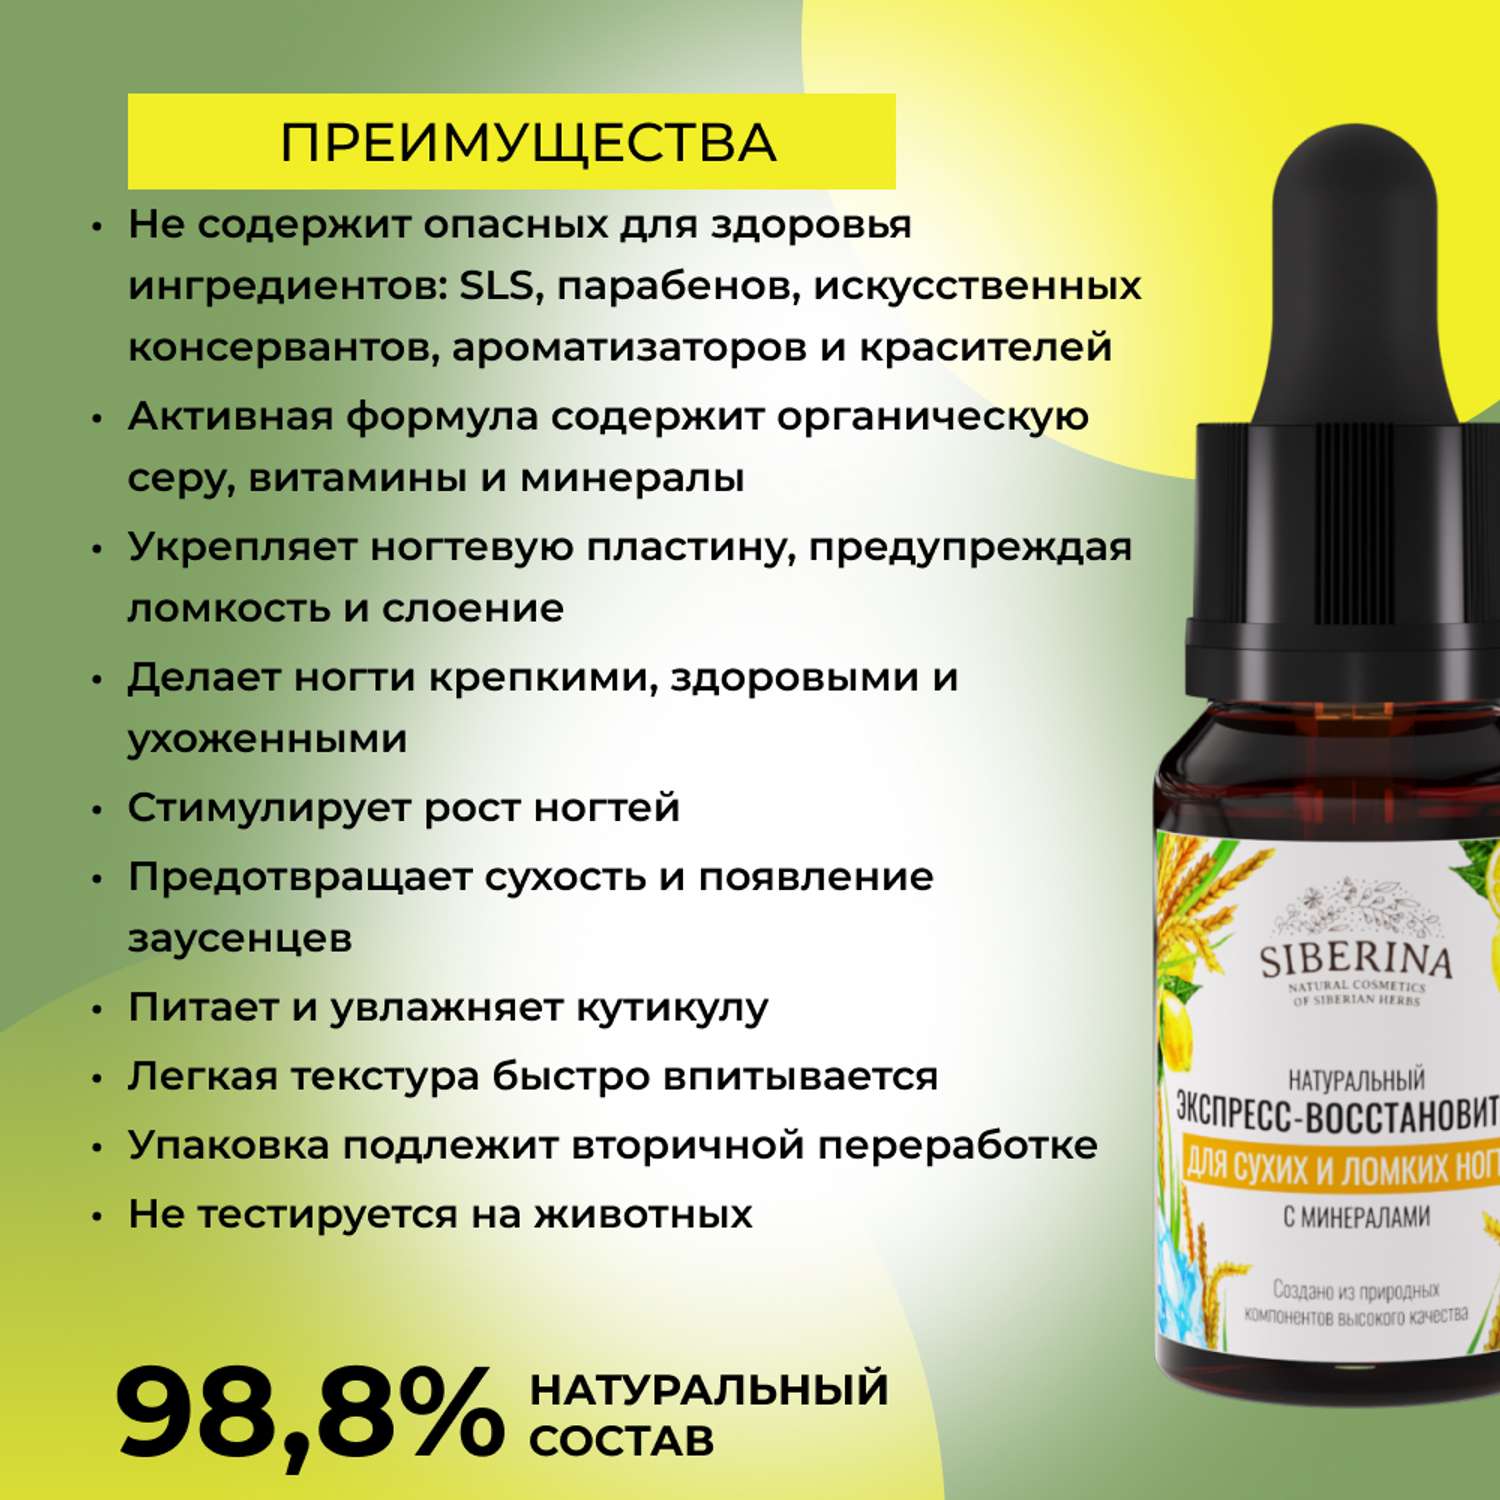 Экспресс-восстановитель Siberina натуральный «Для сухих и ломких ногтей» с минералами 10 мл - фото 3